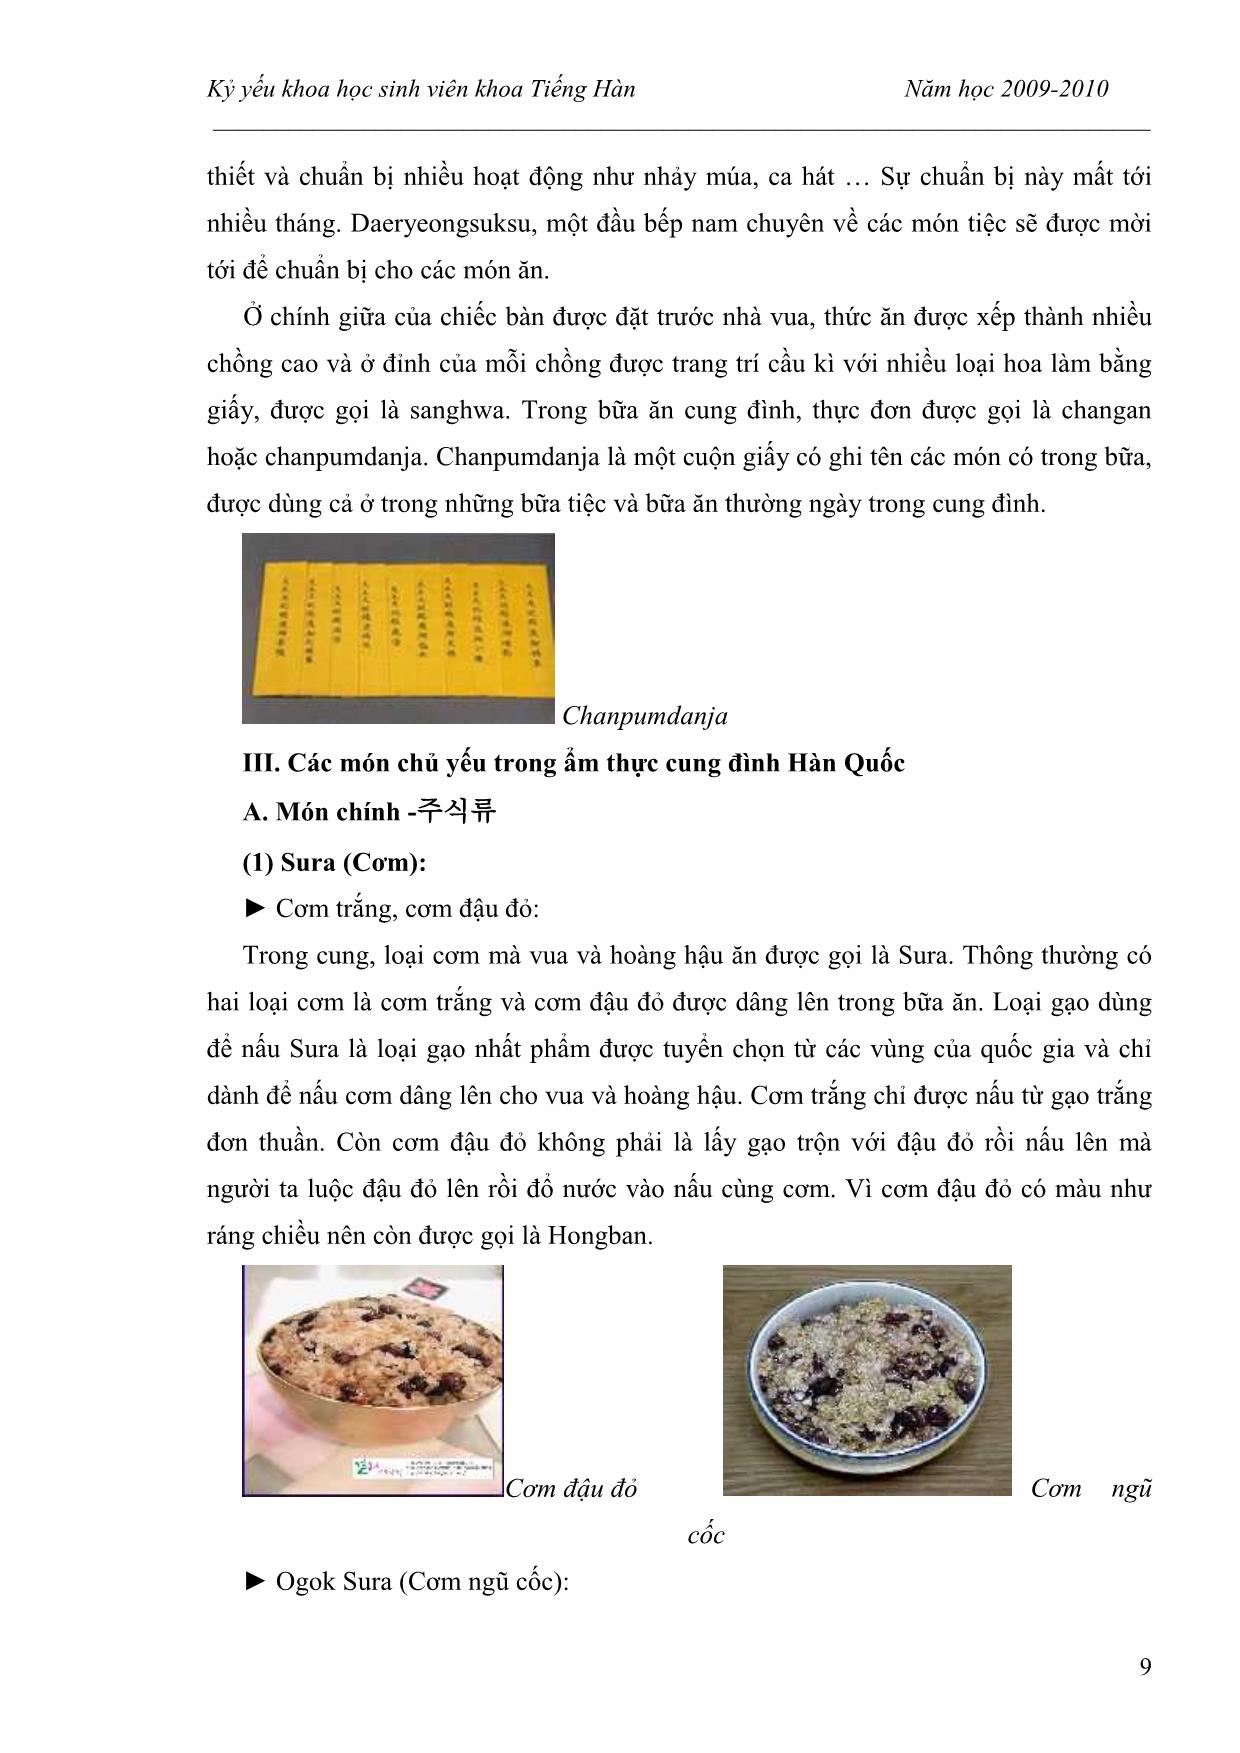 Ẩm thực cung đình Hàn Quốc trang 9